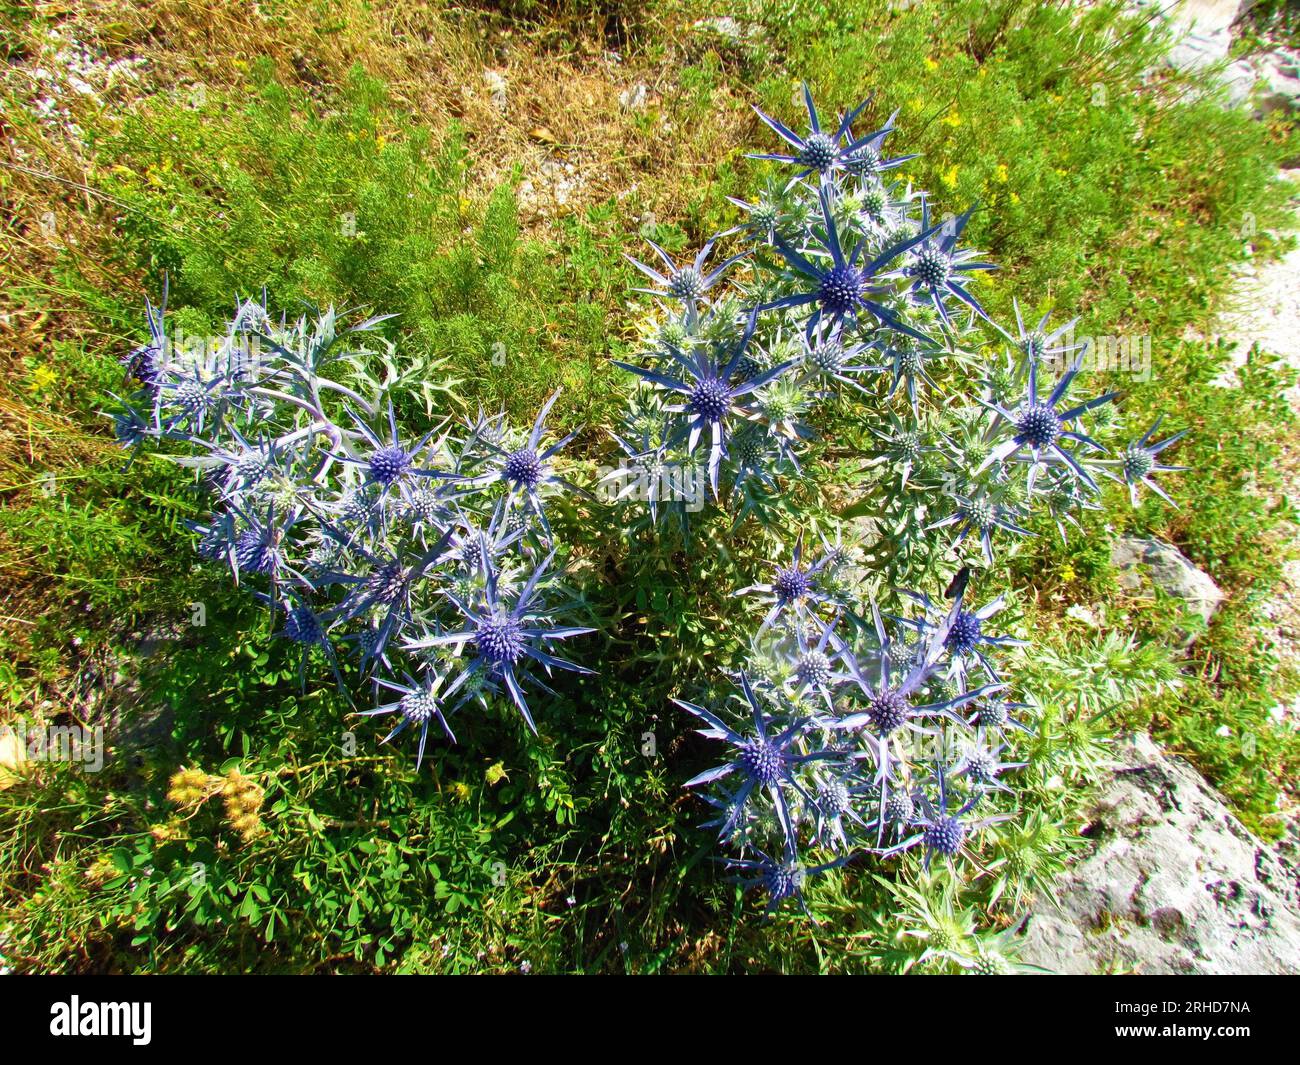 Blue amethyst eryngo (Eryngium amethystinum) flower Stock Photo